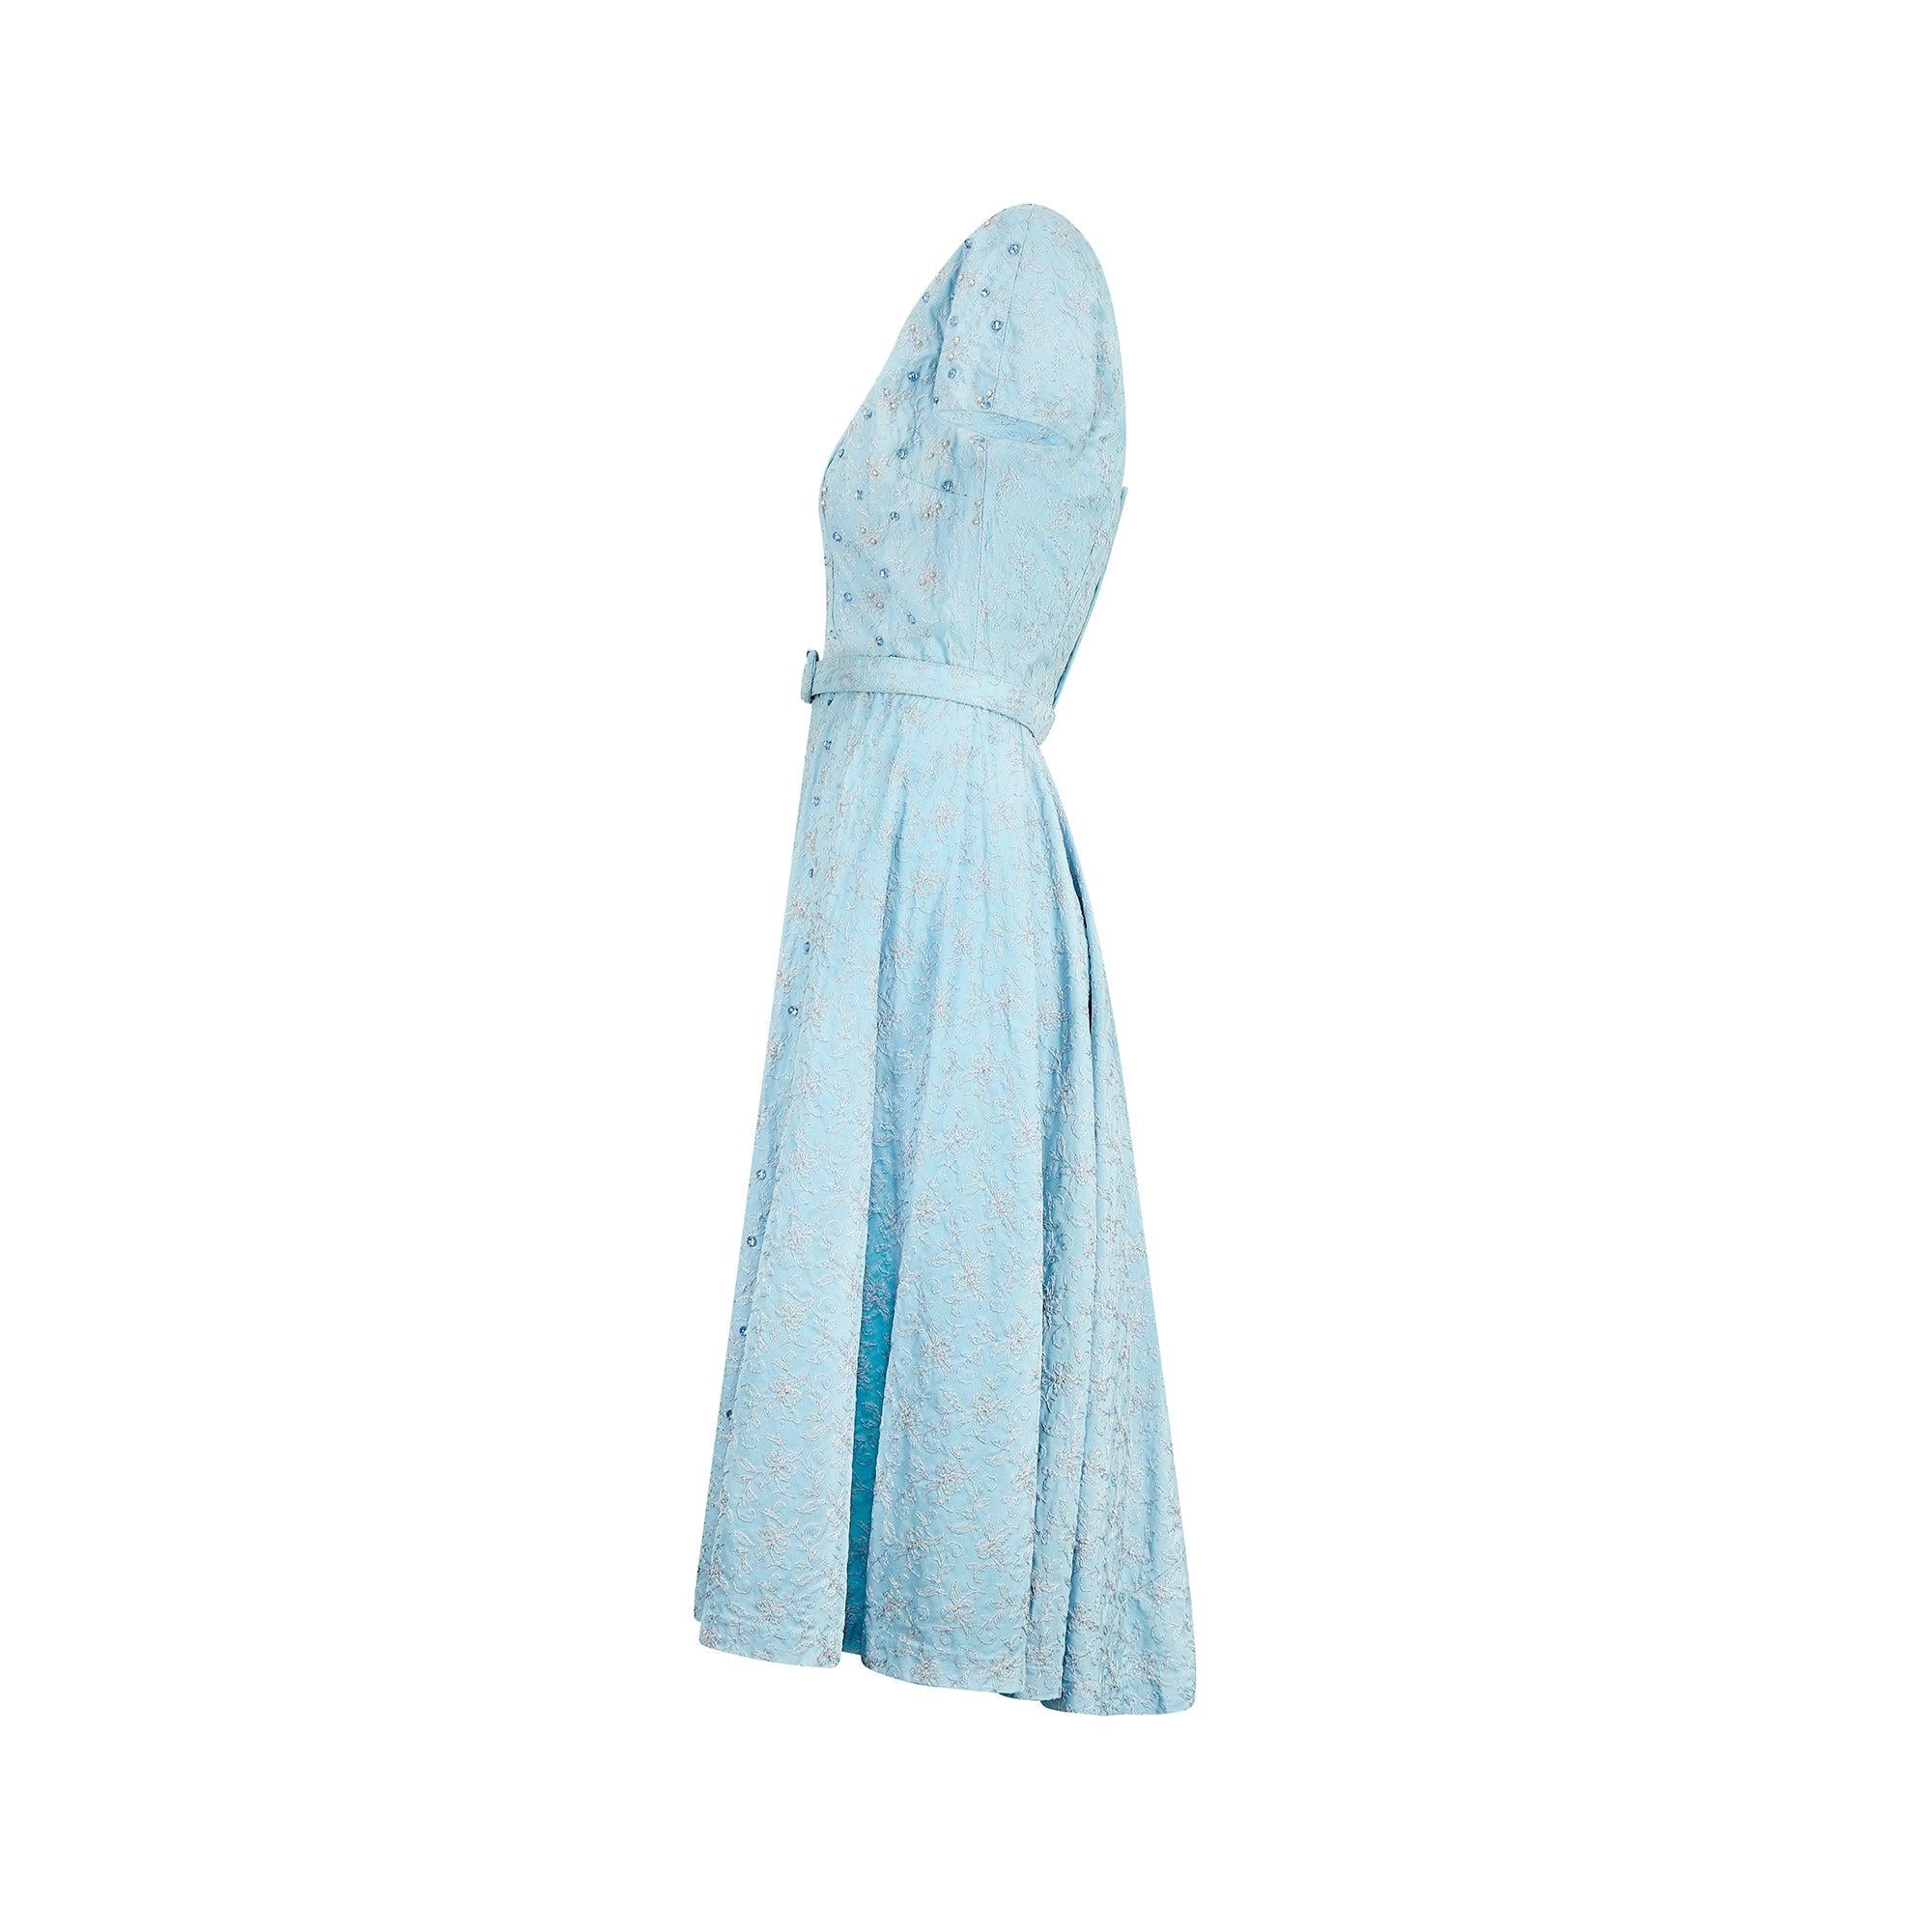 Dieses prächtig verzierte Kleid wurde in den 1950er Jahren entworfen und höchstwahrscheinlich für ein besonderes Ereignis maßgefertigt. Mit seinen kurzen Ärmeln, dem quadratischen Ausschnitt und dem kreisrunden Rock weist es viele Merkmale der